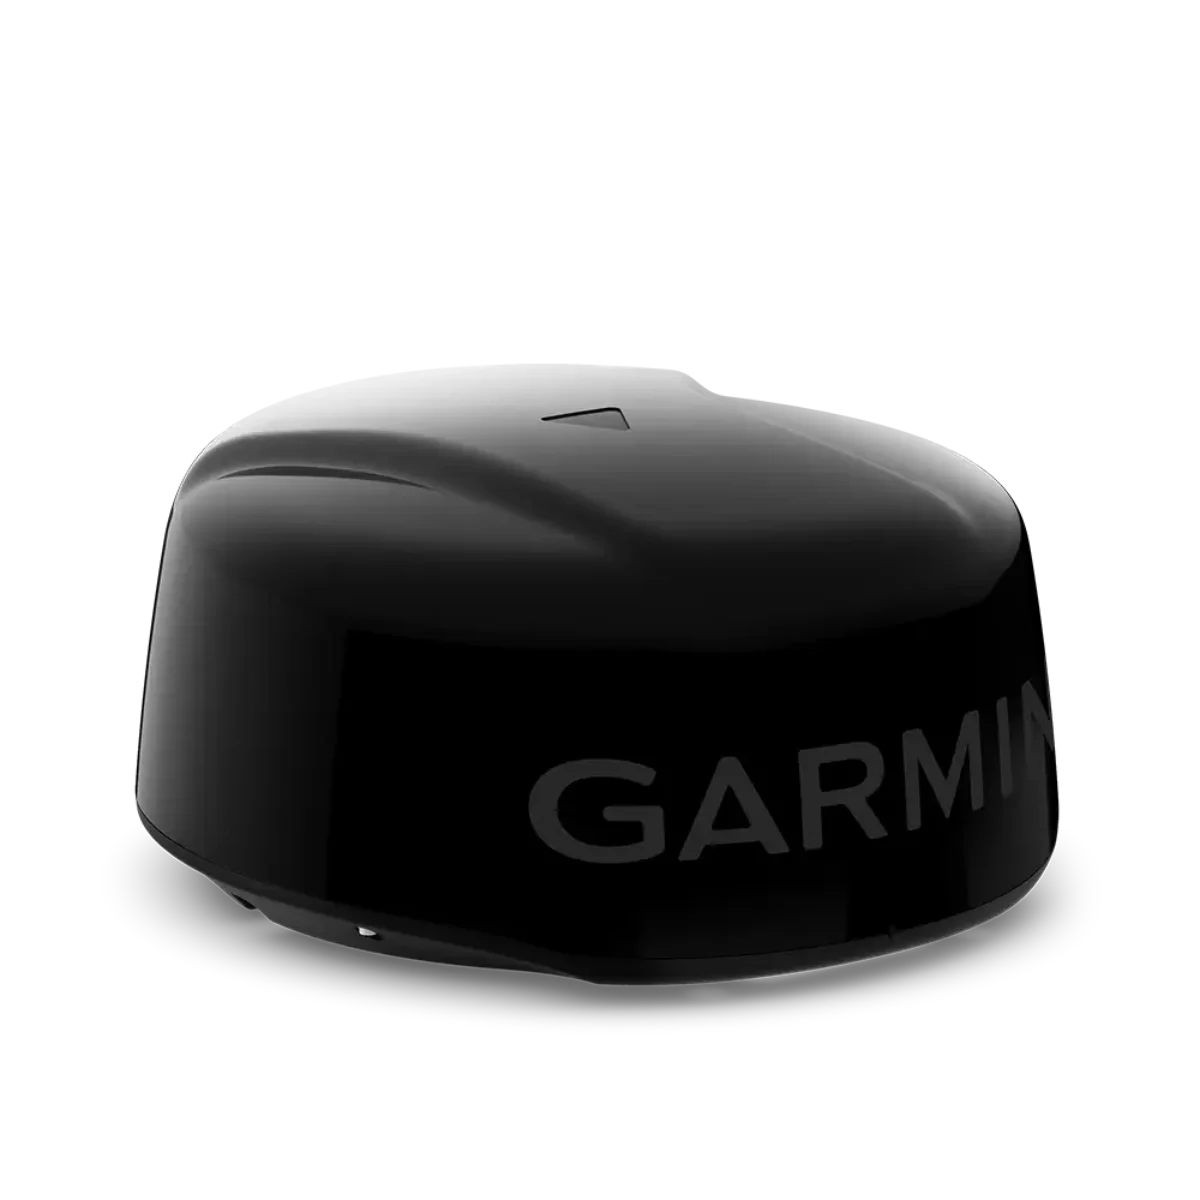 Garmin GMR Fantom 18x Dome Radar in black